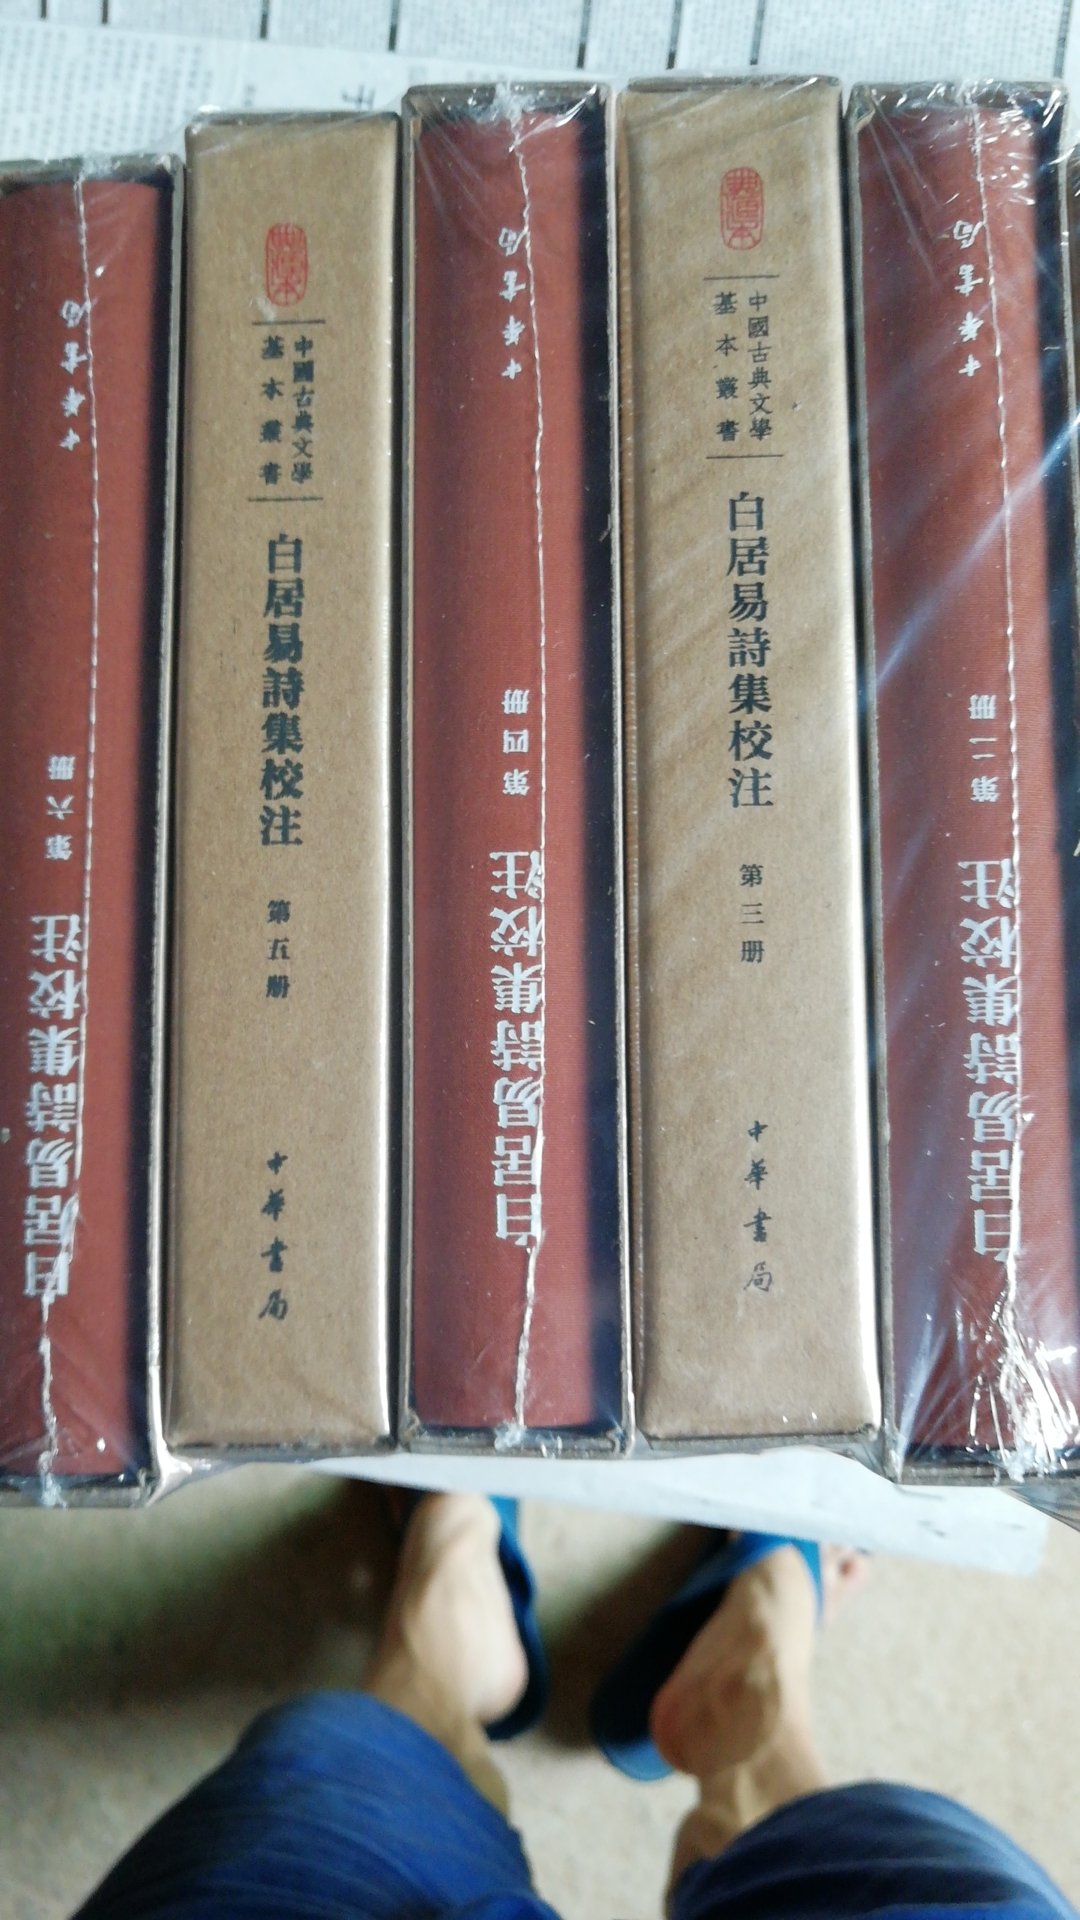 中华书局的权威版本，值得收藏和欣赏！